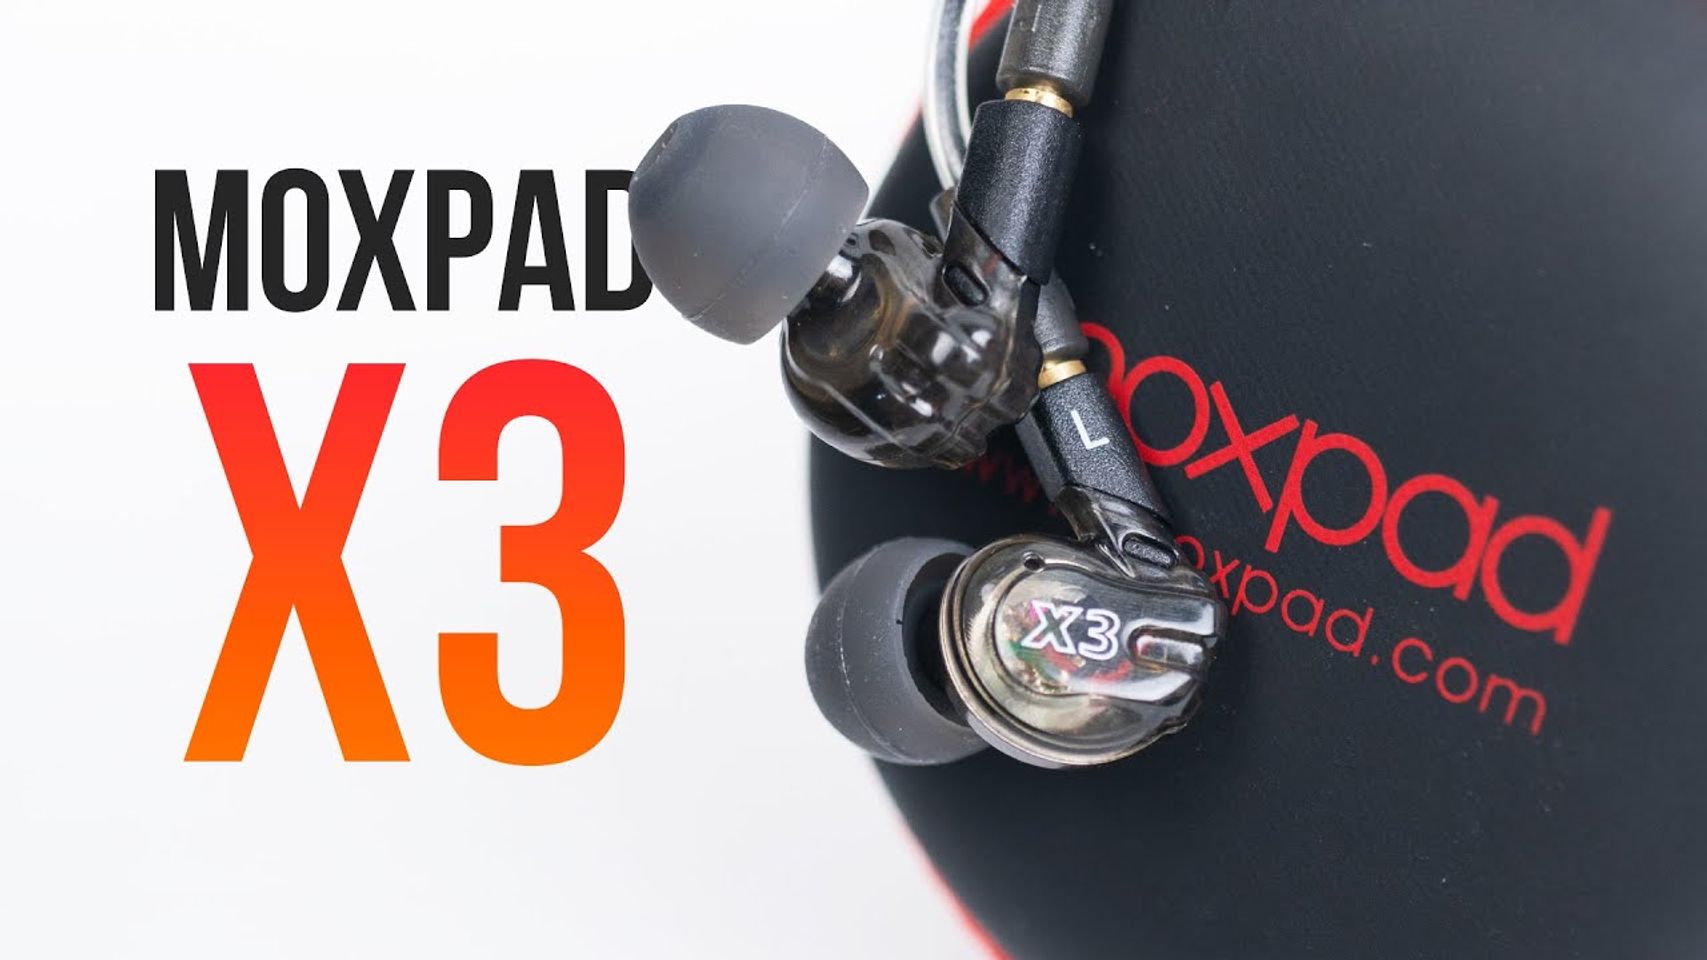 Tai nghe Moxpad X3 có mic thoại  thiết kế thời thượng 